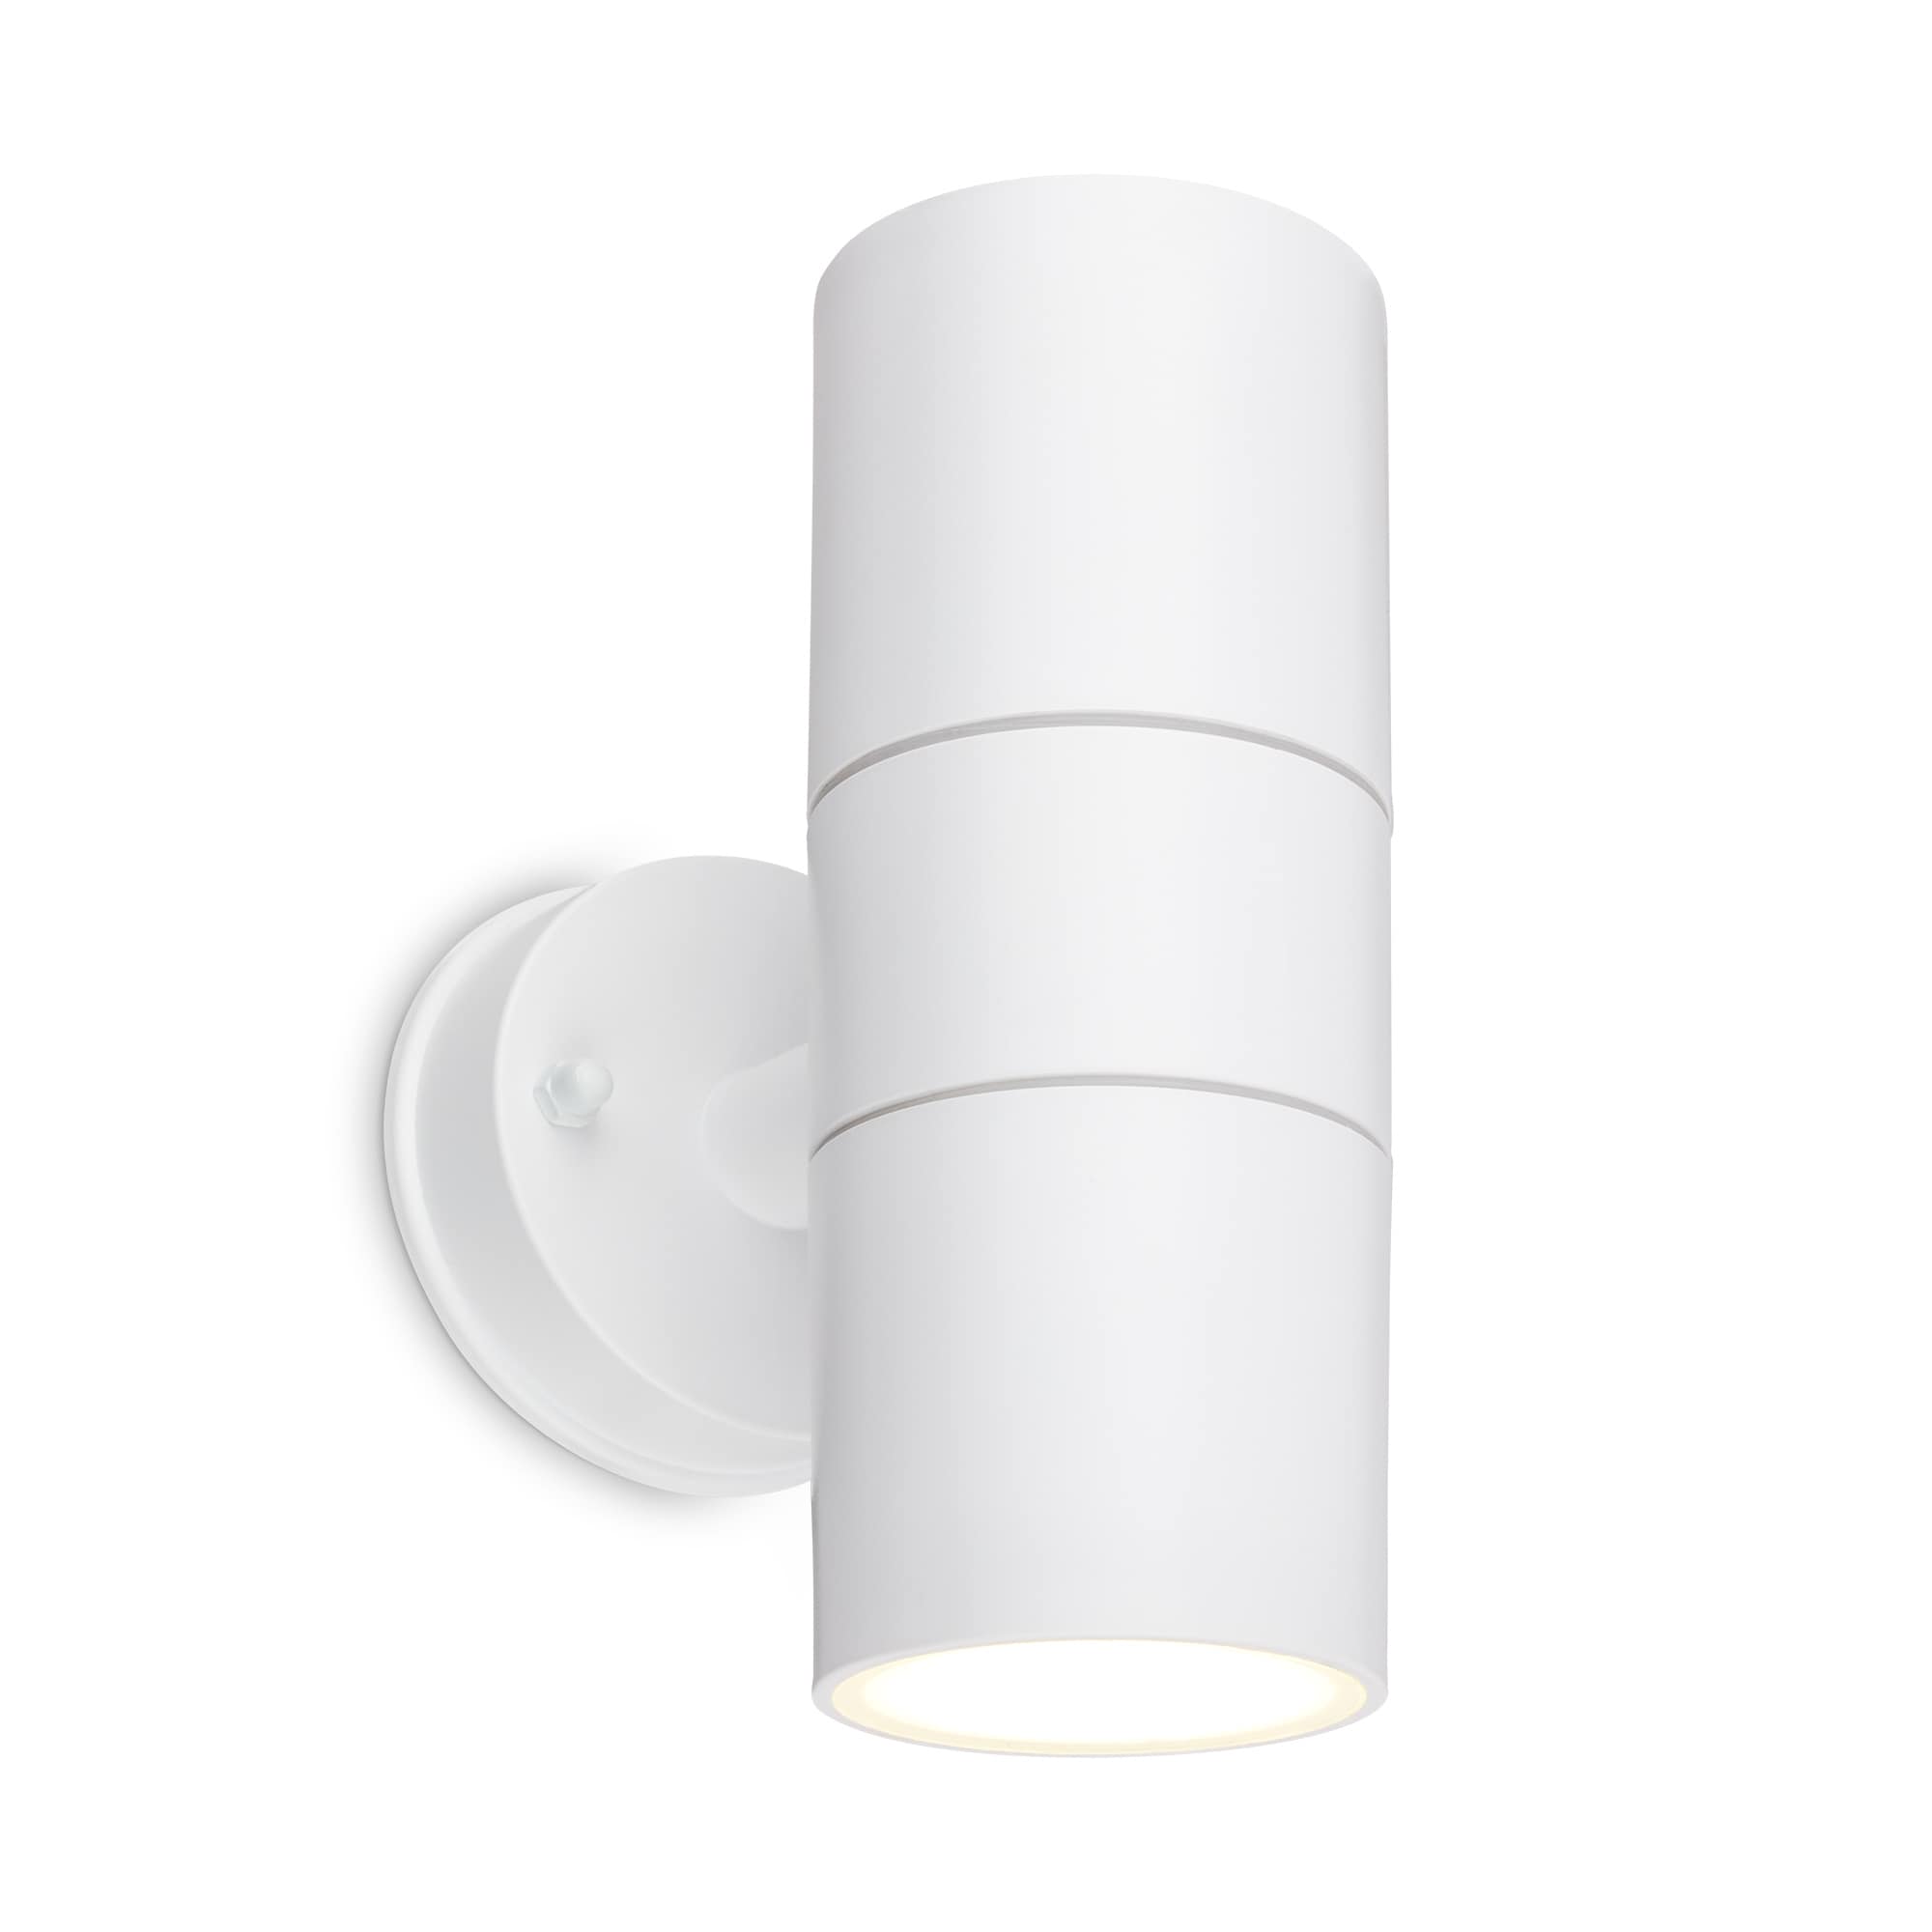 Briloner LED wall lamp, protezione dagli spruzzi d'acqua e dalla polvere, up & downlight